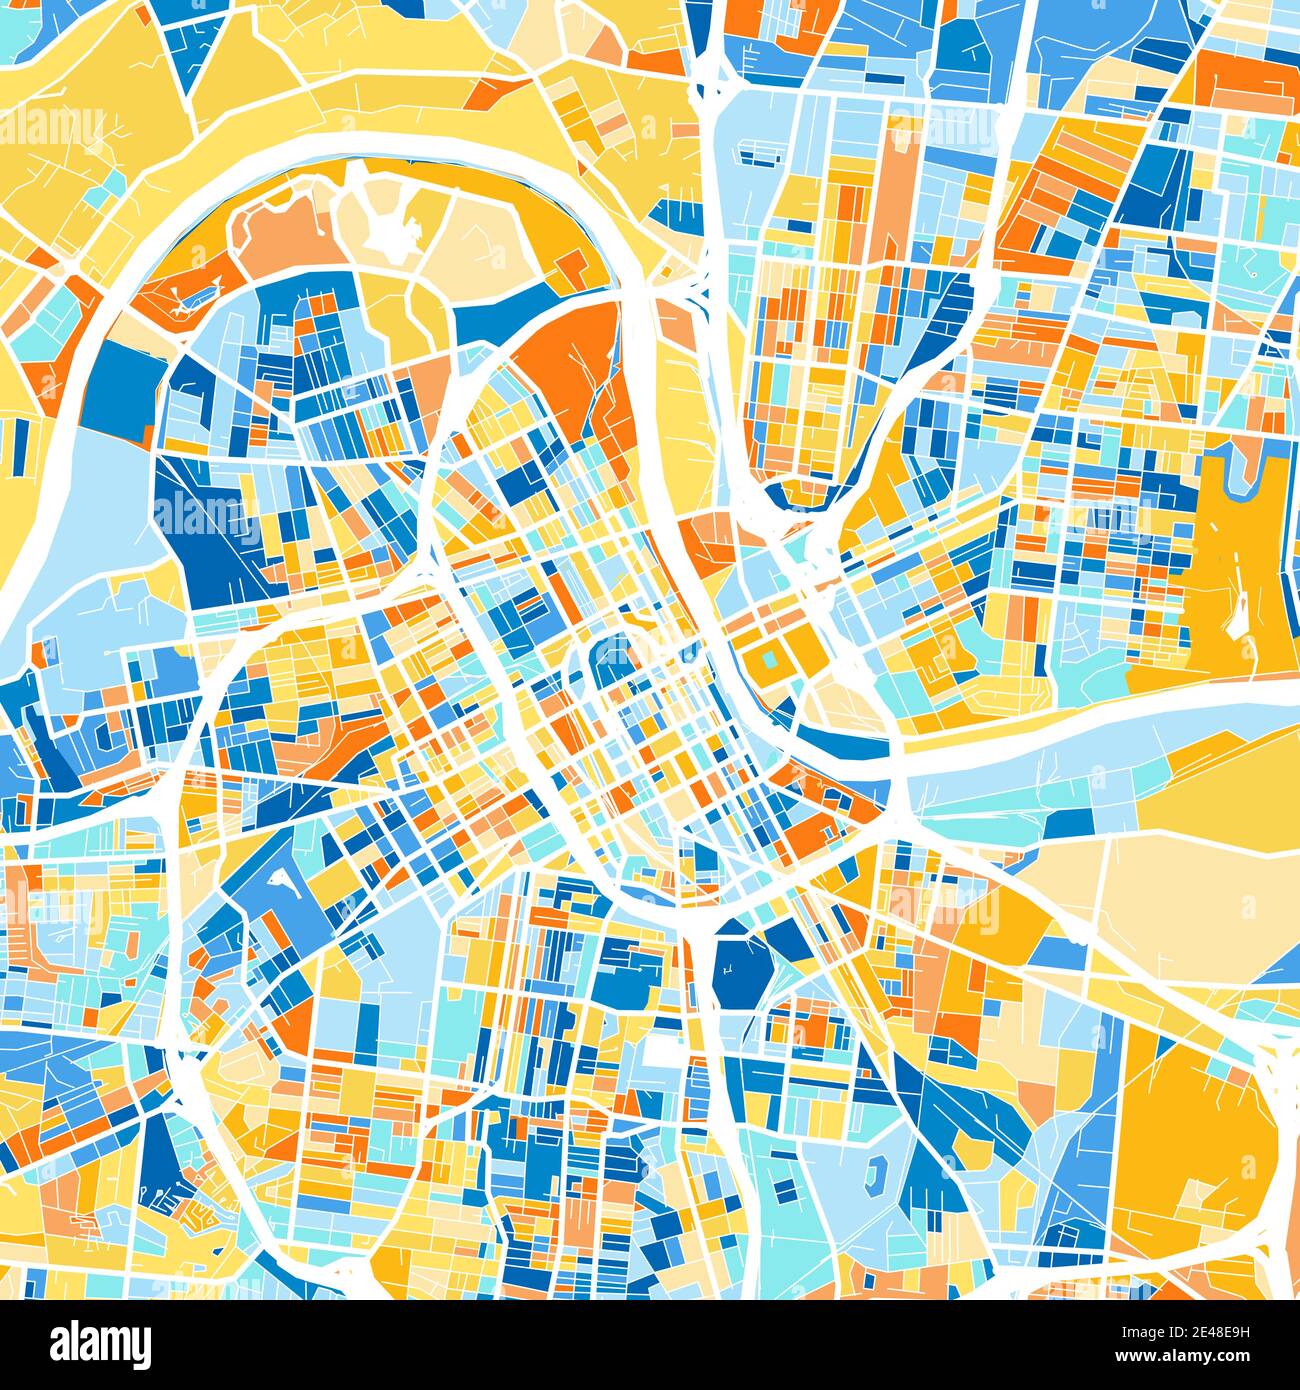 Farbkunstkarte von Nashville, Tennessee, UnitedStates in Blau und Orangen. Die Farbabstufungen in der Nashville-Karte folgen einem zufälligen Muster. Stock Vektor